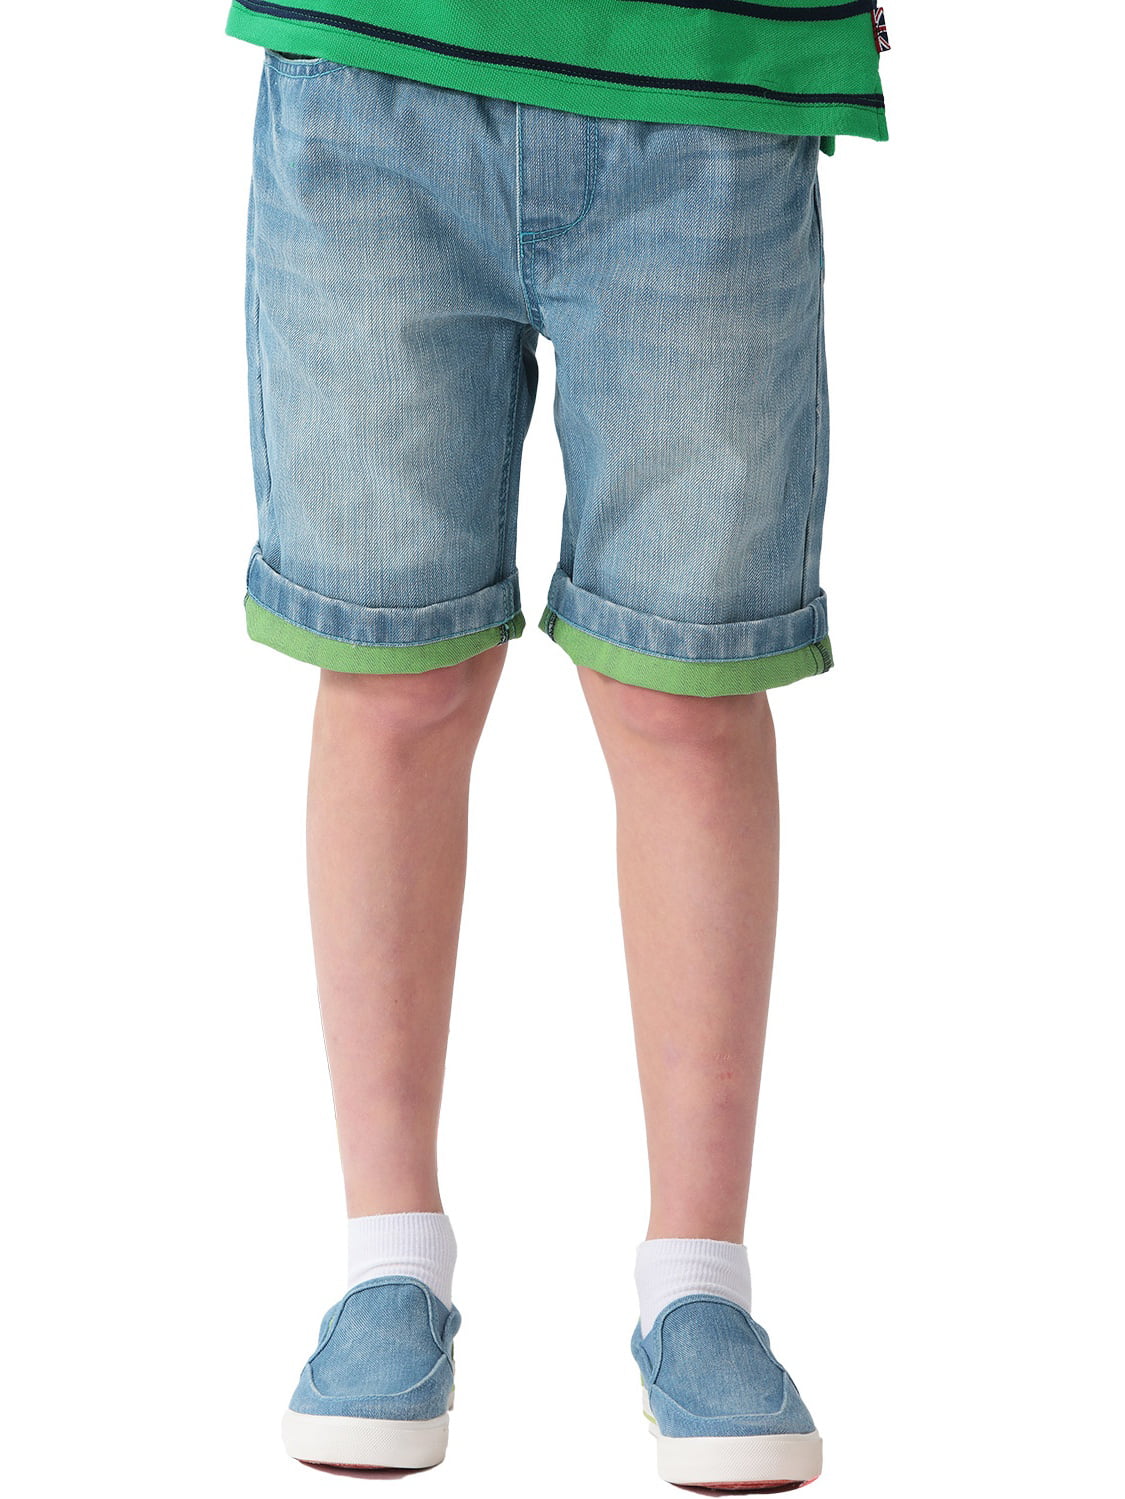 Boys Cargo Shorts Adjustable Waistband Camouflage Arizona Jeans Regular Fit